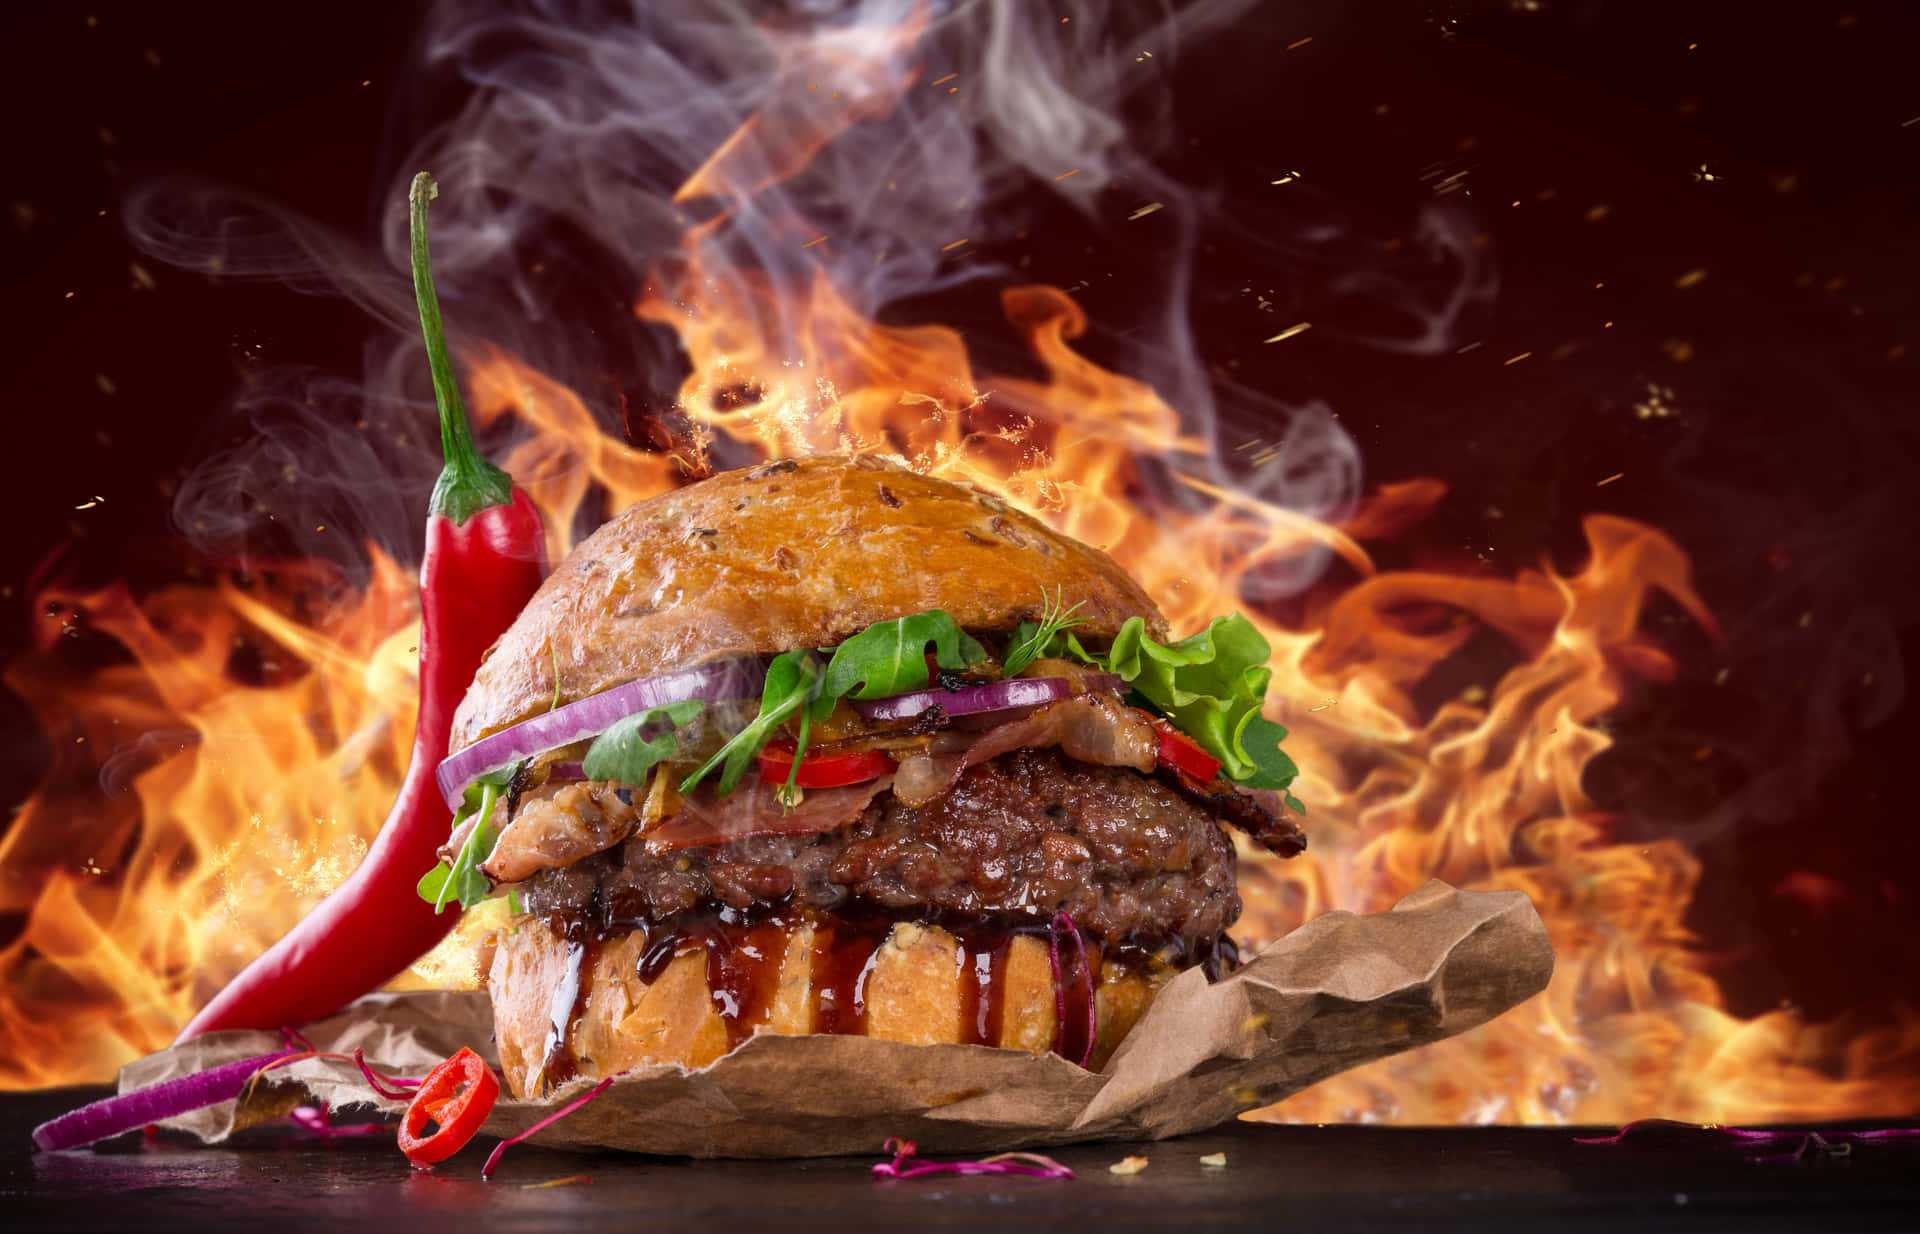 Spicy Hamburger Best Food Background